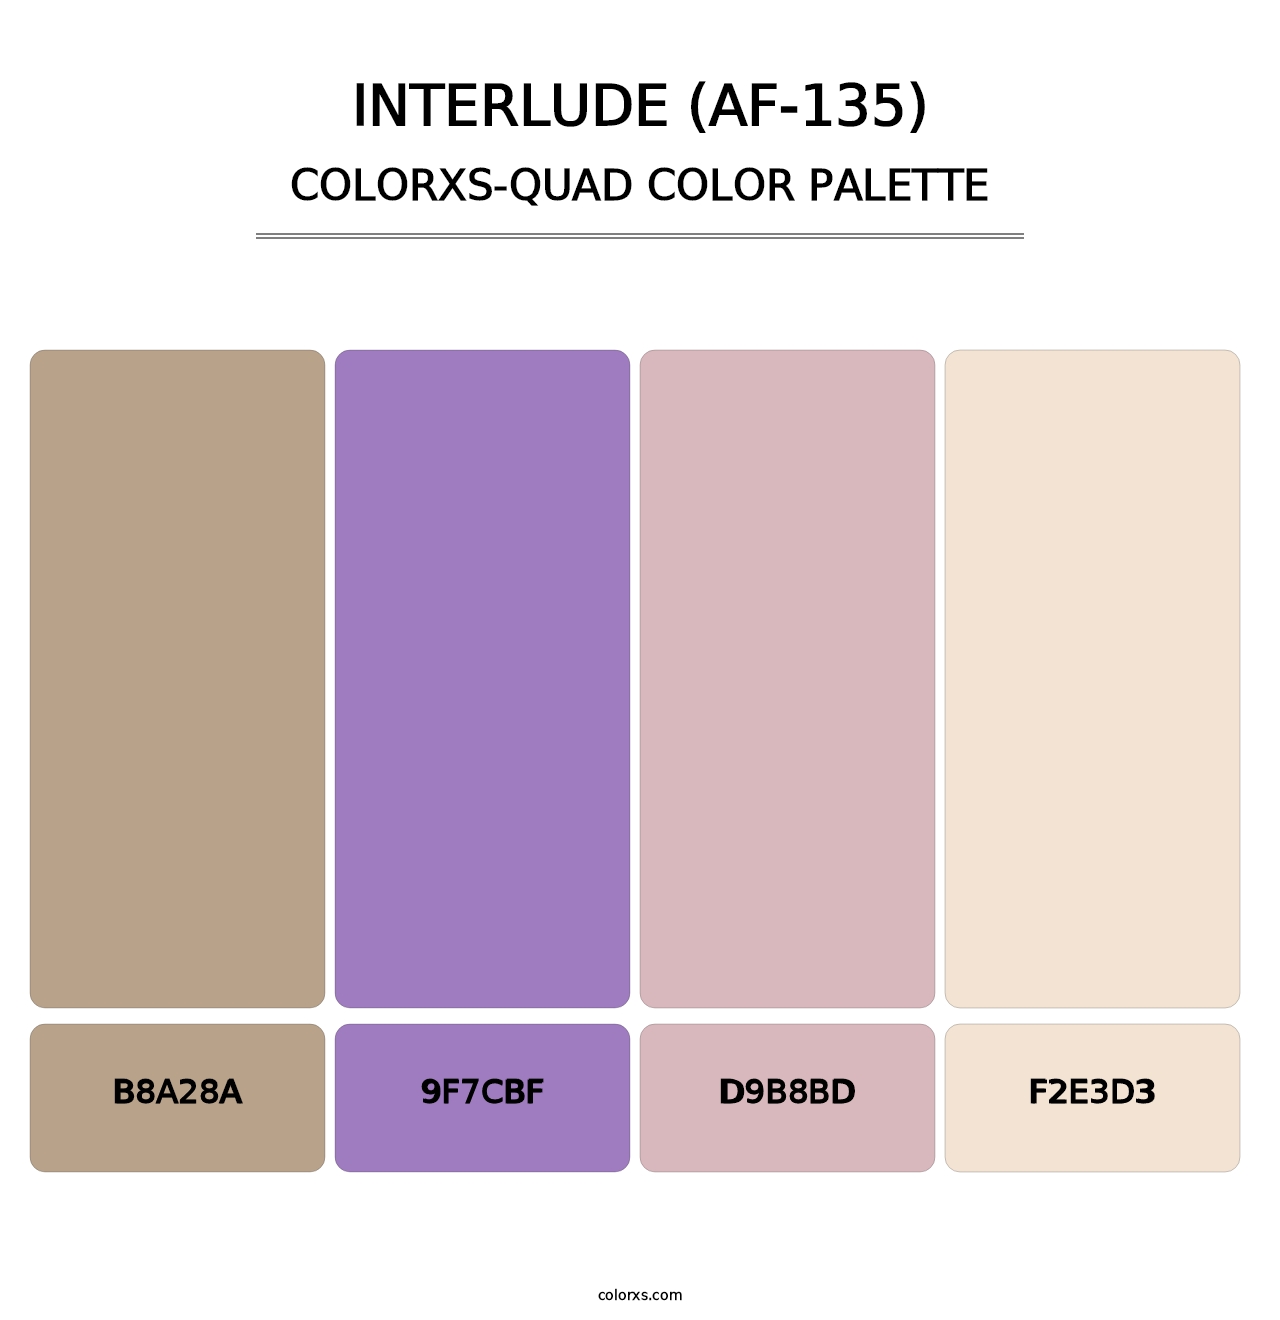 Interlude (AF-135) - Colorxs Quad Palette